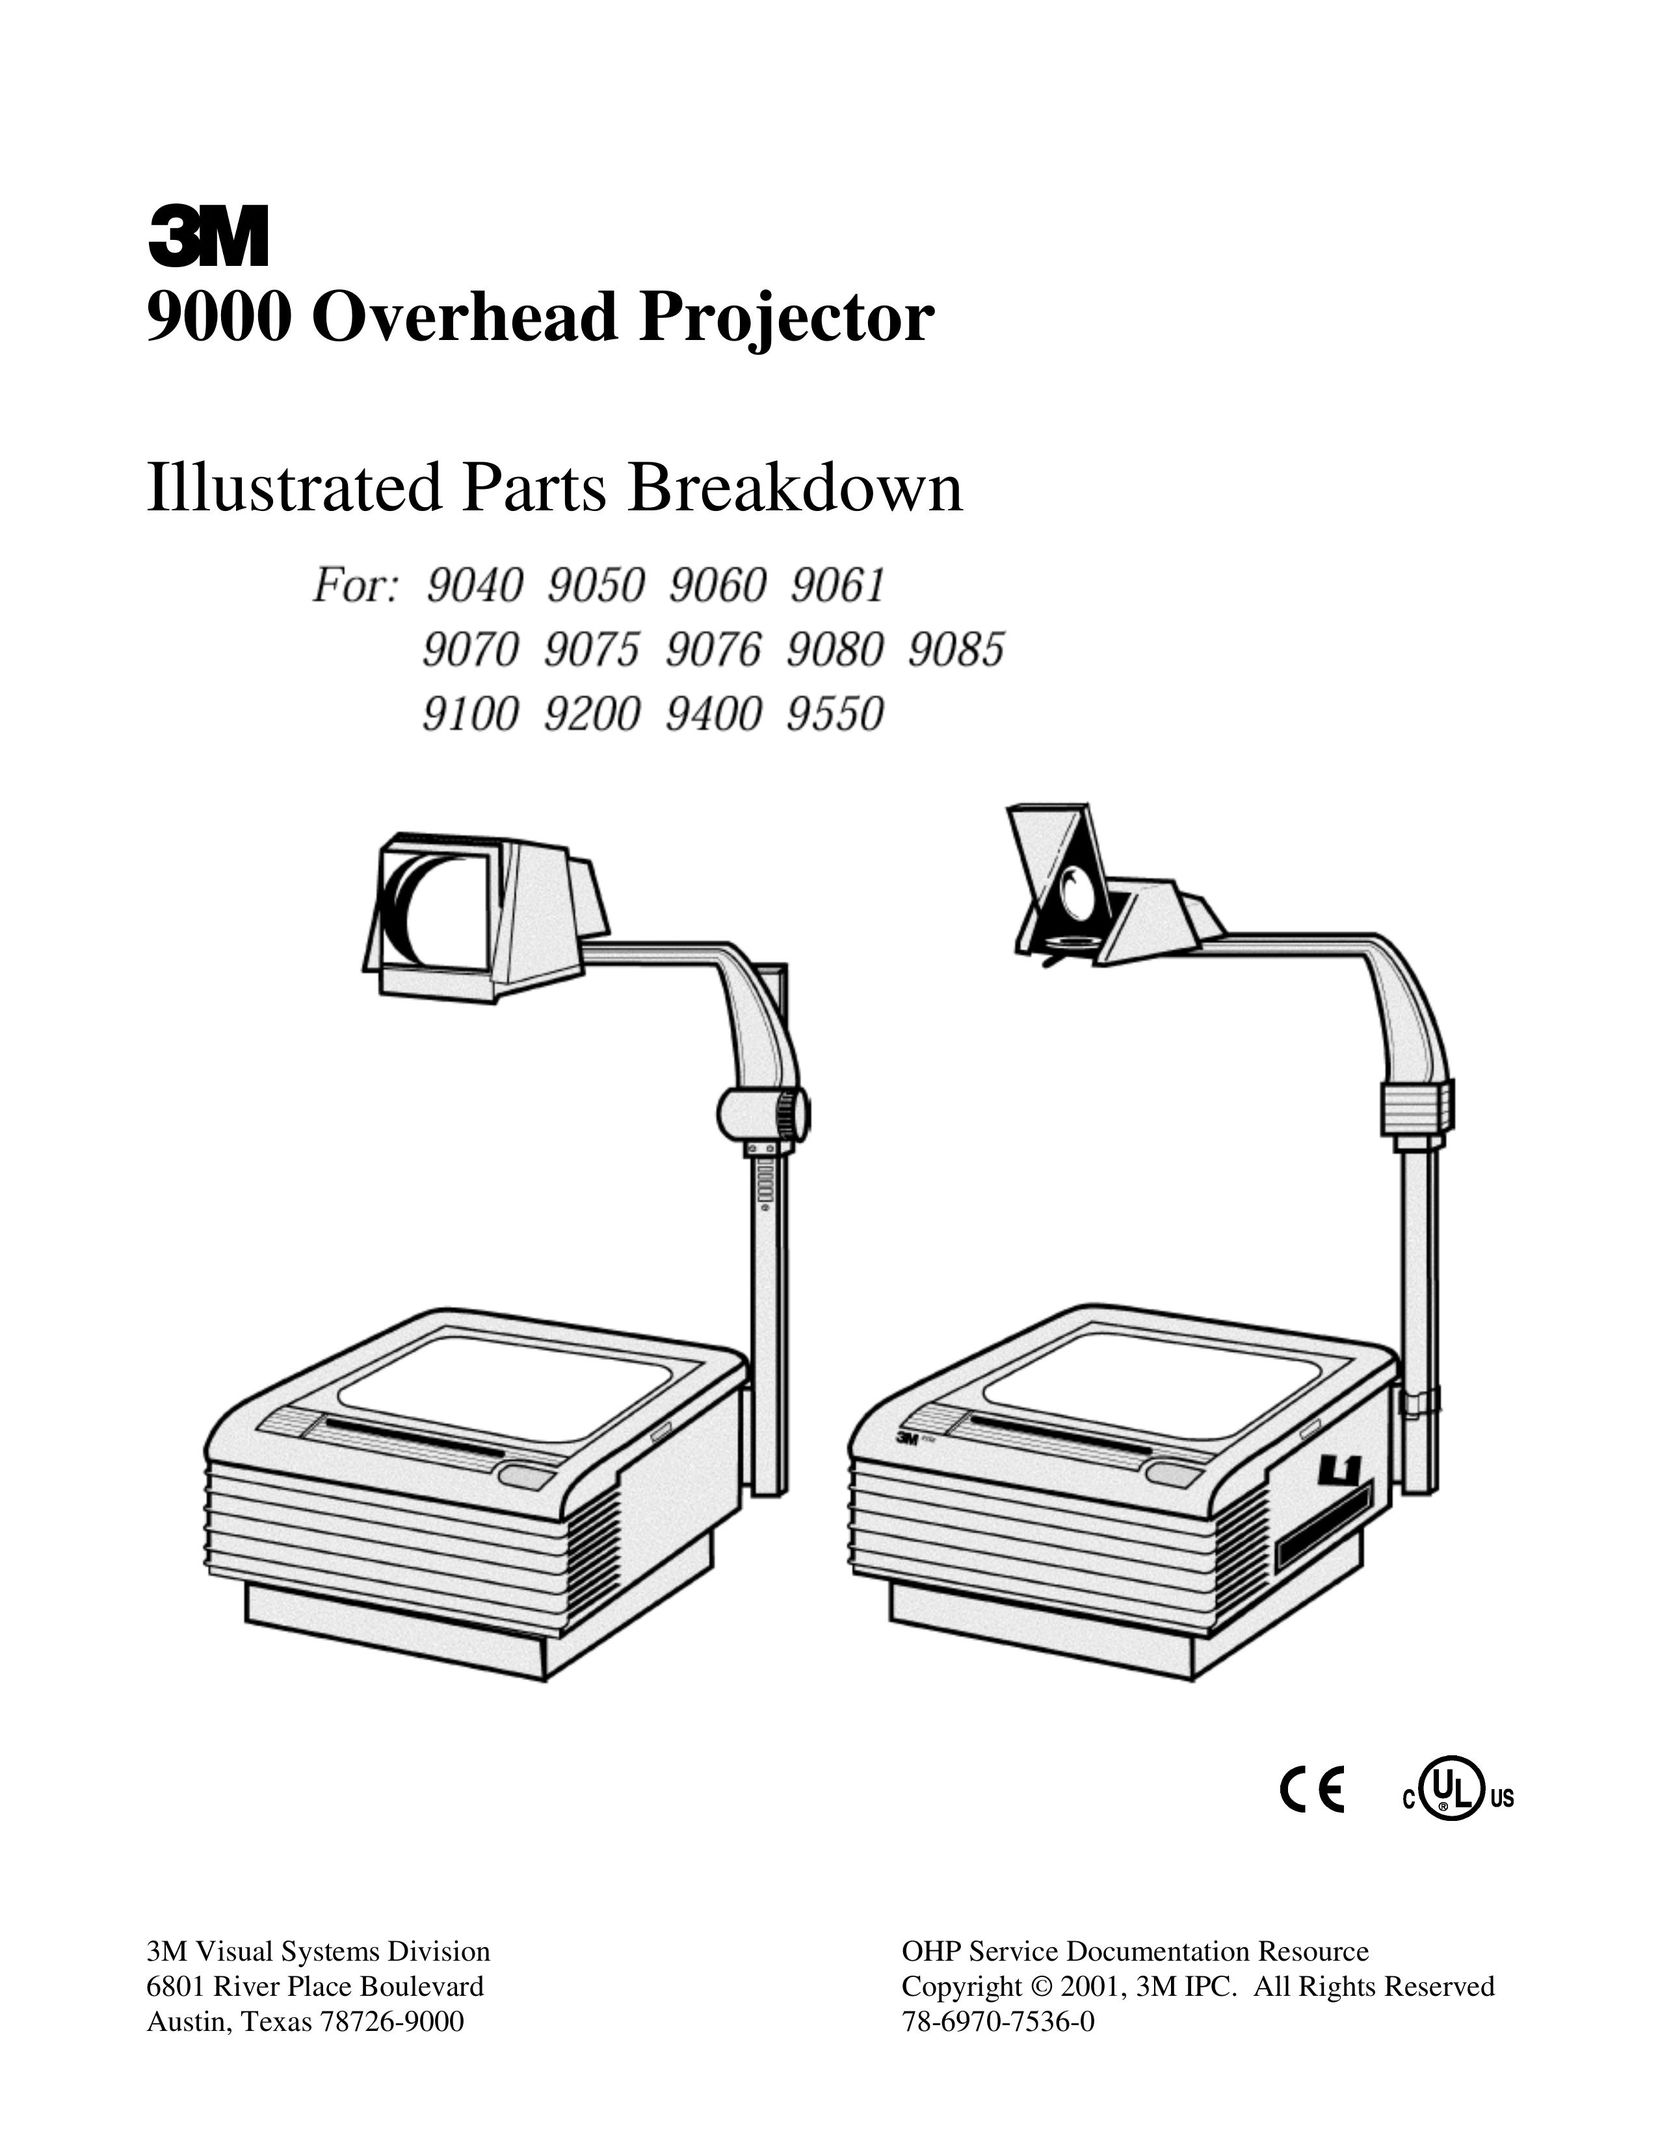 Xerox 9085 Projector User Manual